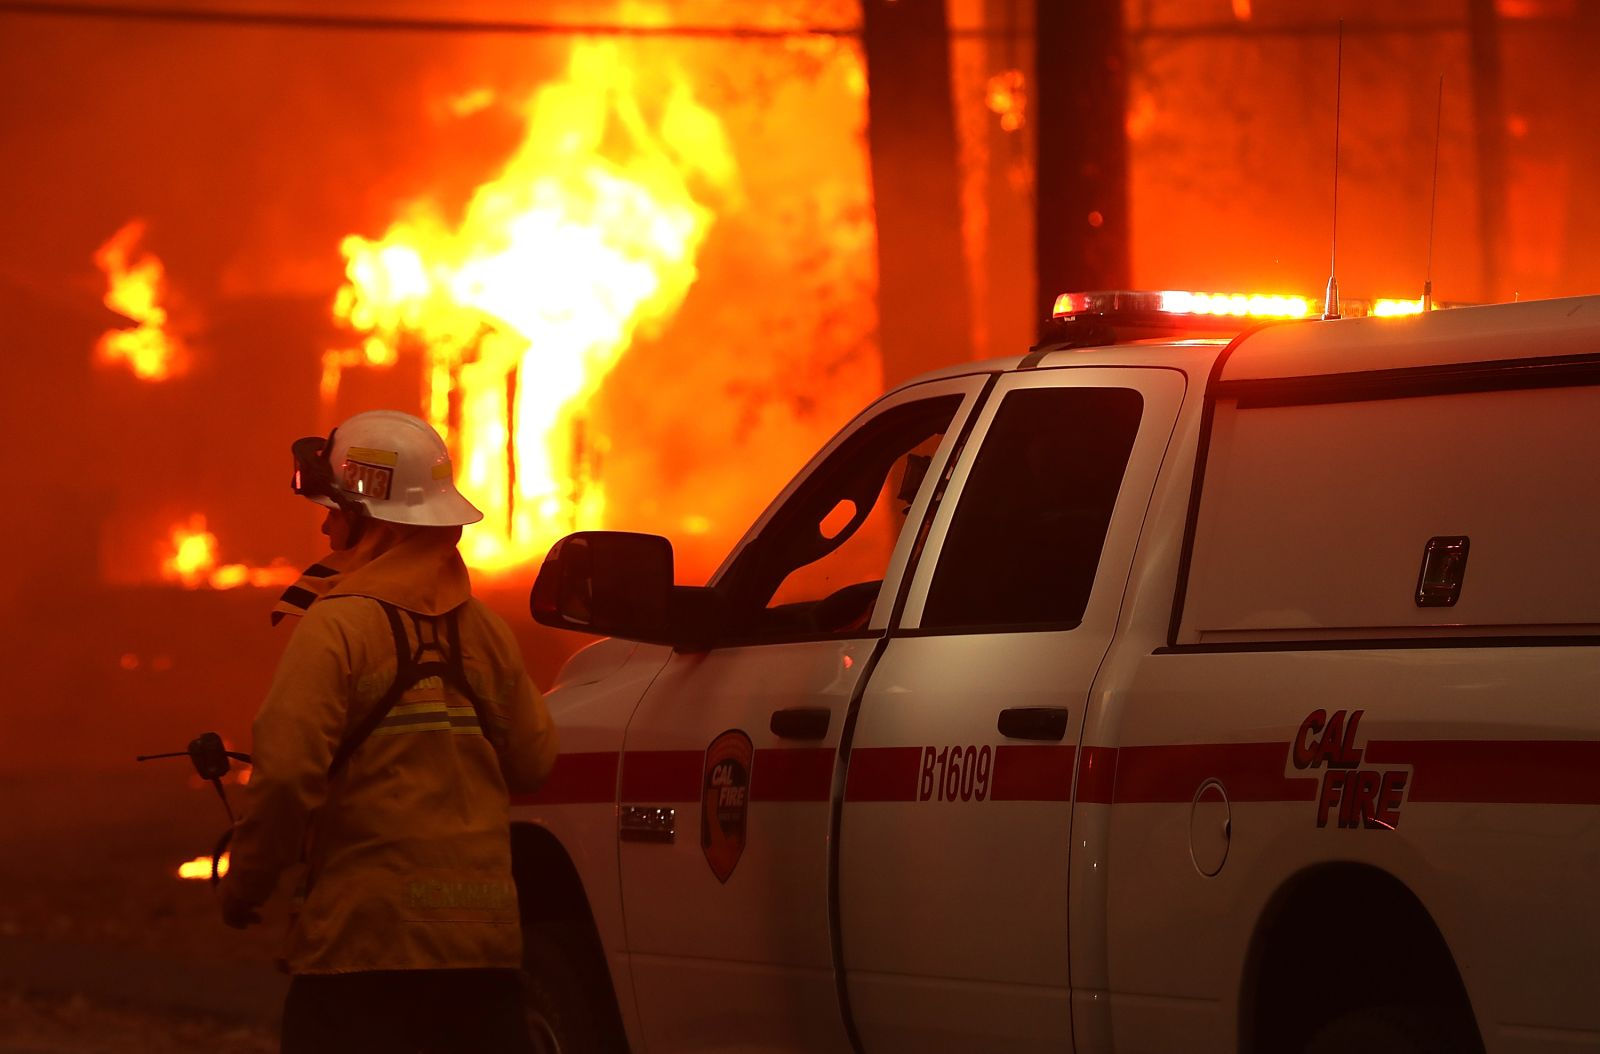   Hàng trăm lính cứu hỏa thuộc Sở Lâm nghiệp và Phòng cháy chữa cháy California được huy động chiến đấu với ngọn lửa.  